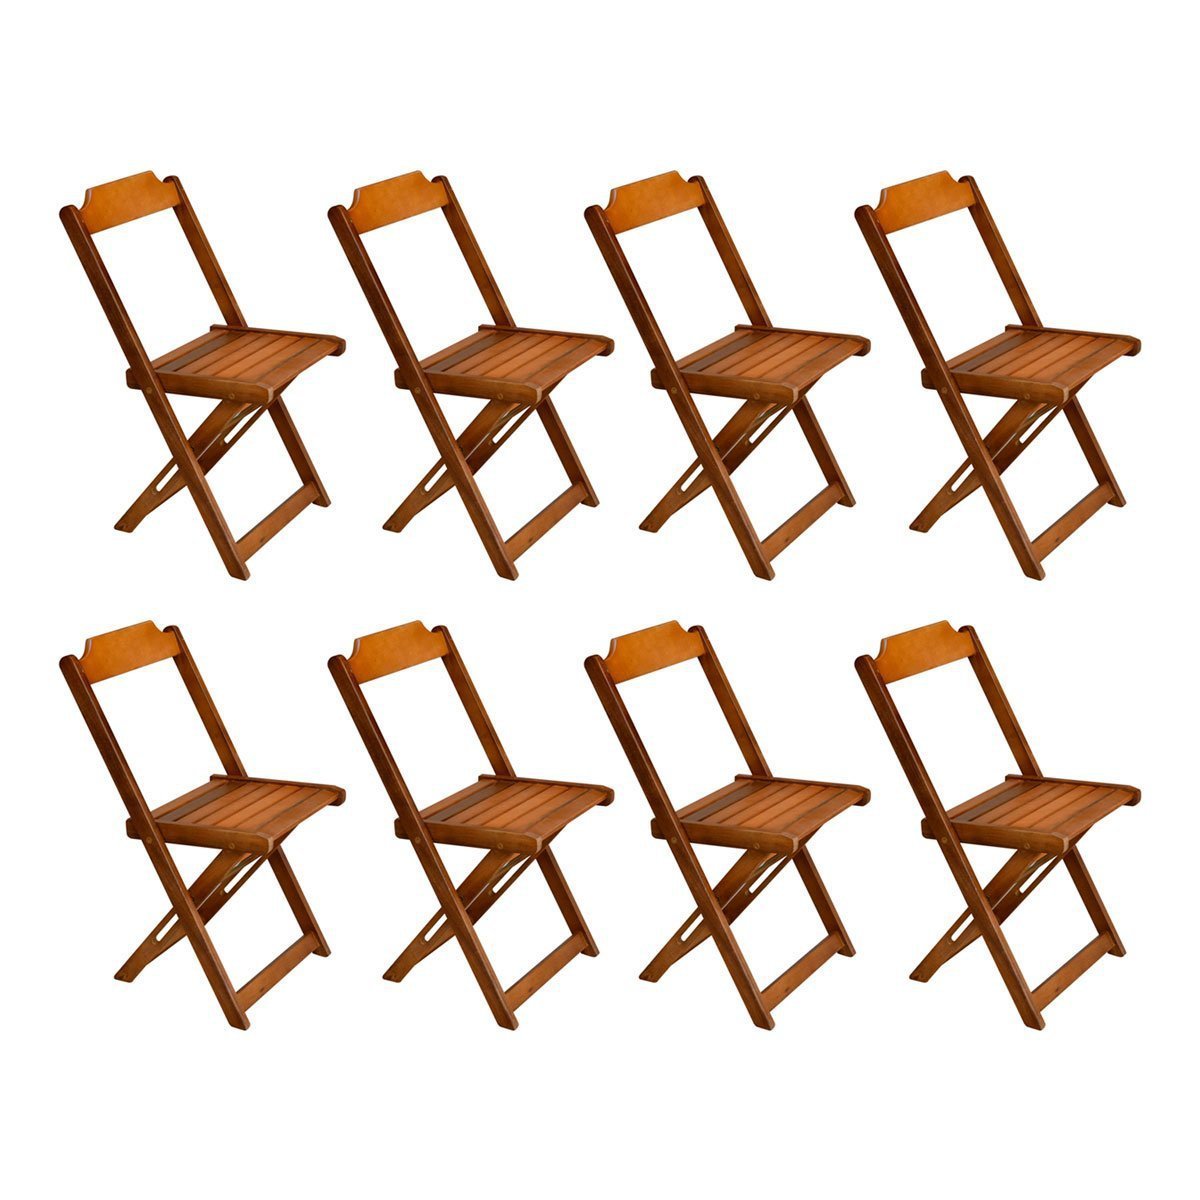 Kit com 8 Cadeiras Dobrável em Madeira Maciça - Mel